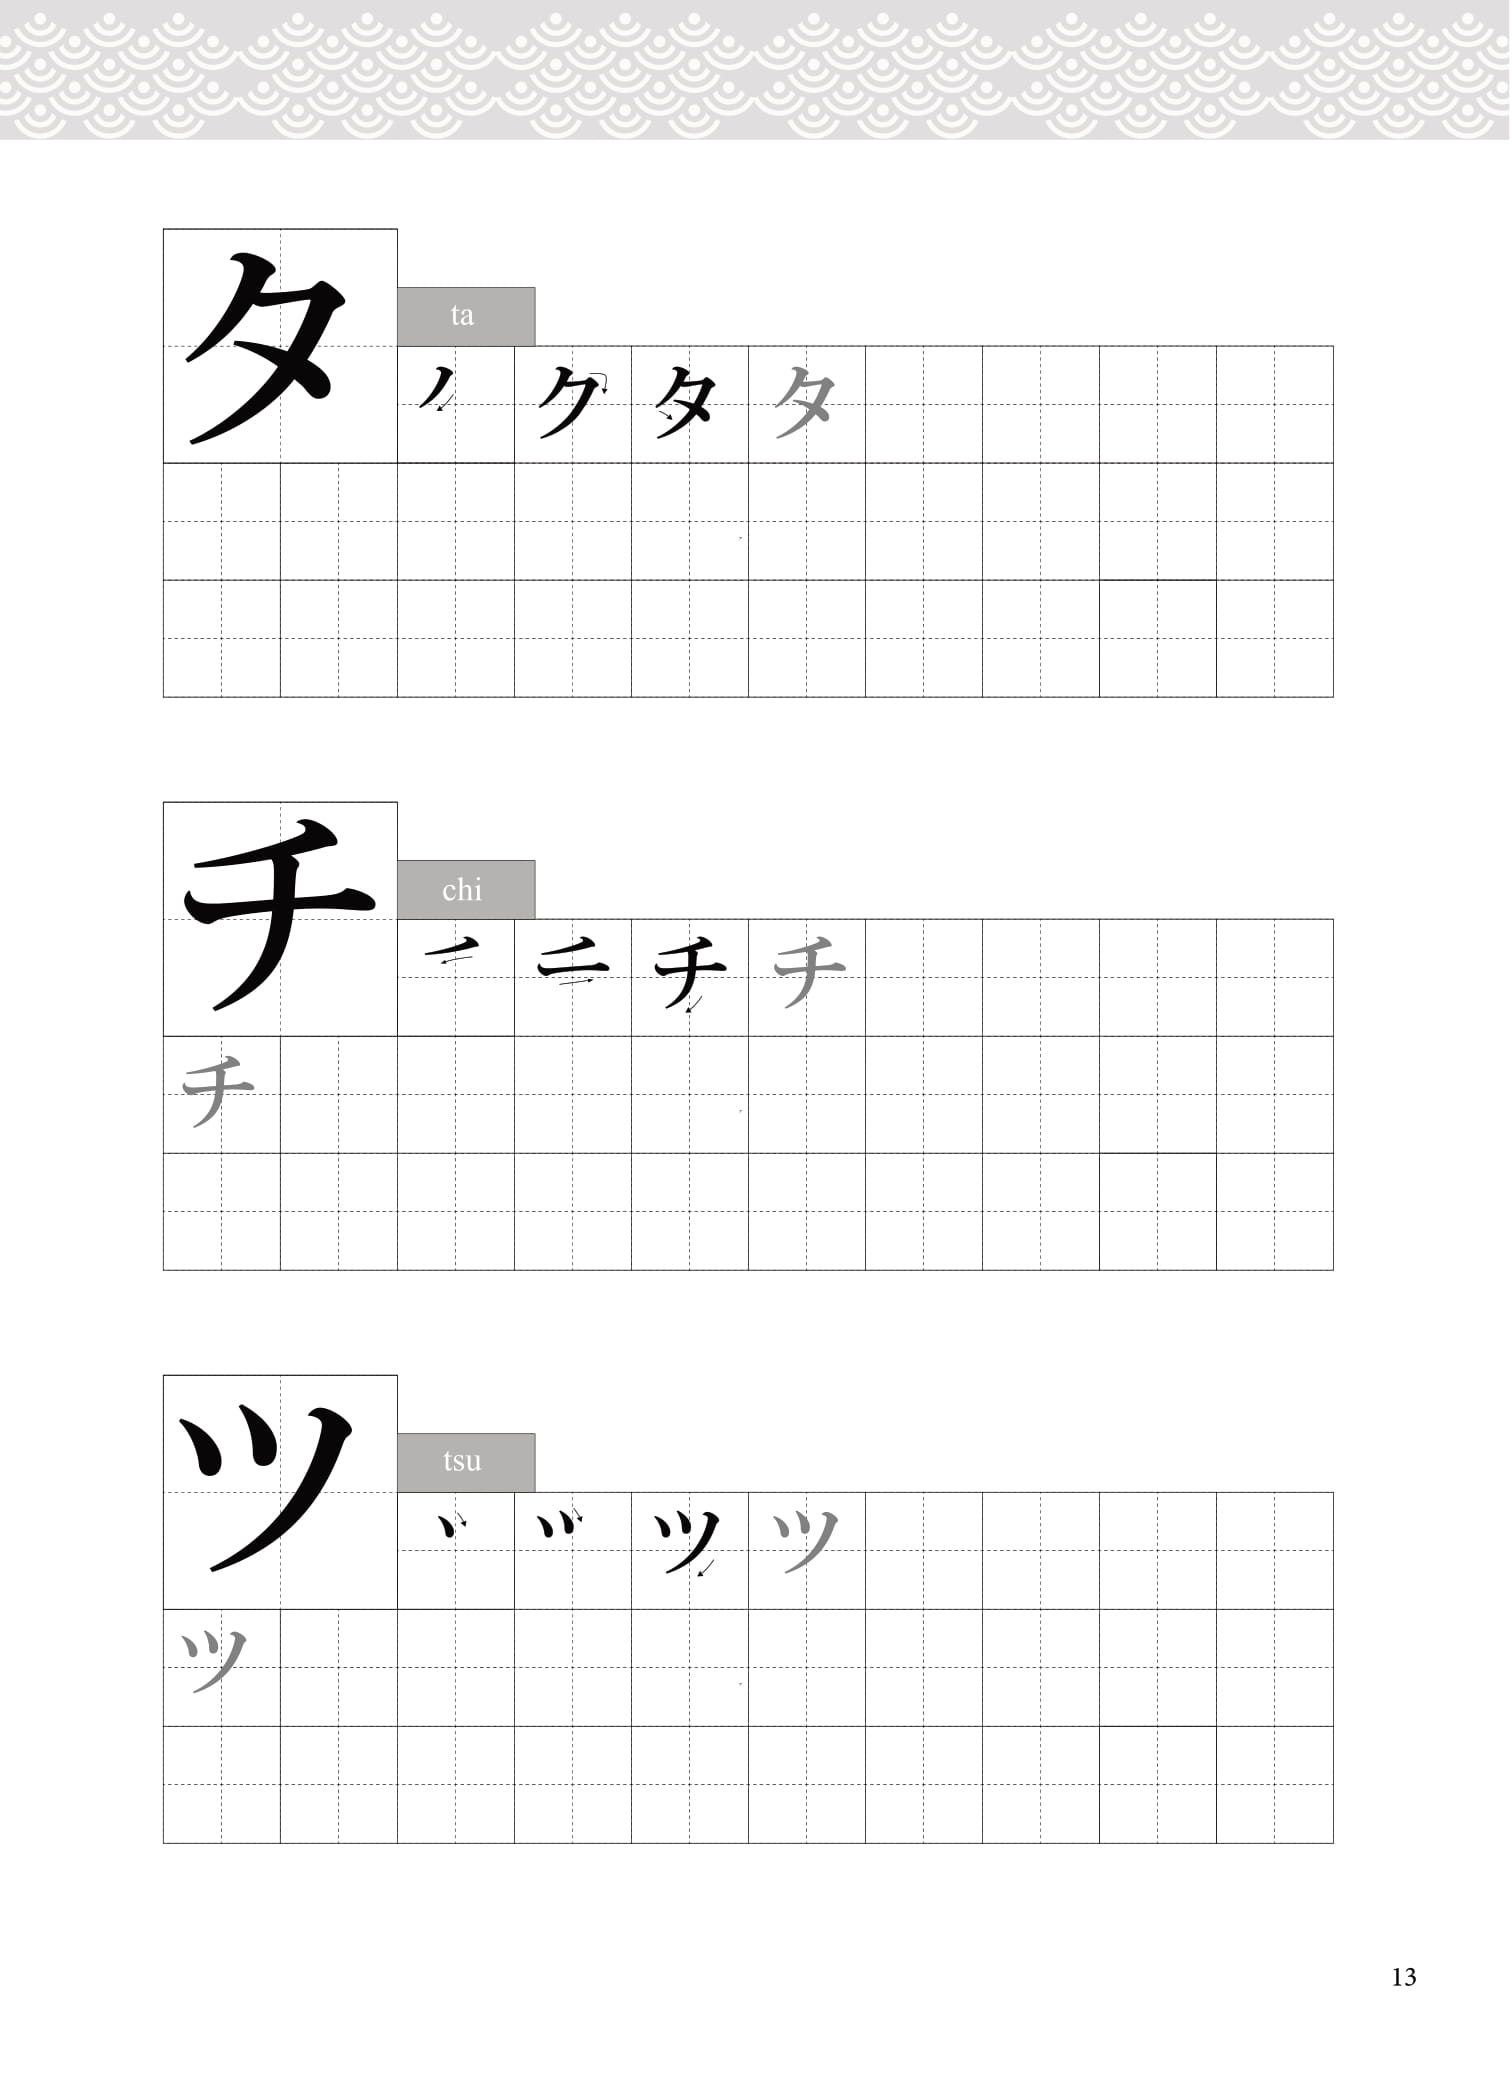 Tập Viết Tiếng Nhật Bảng Chữ Cái Katakana PDF